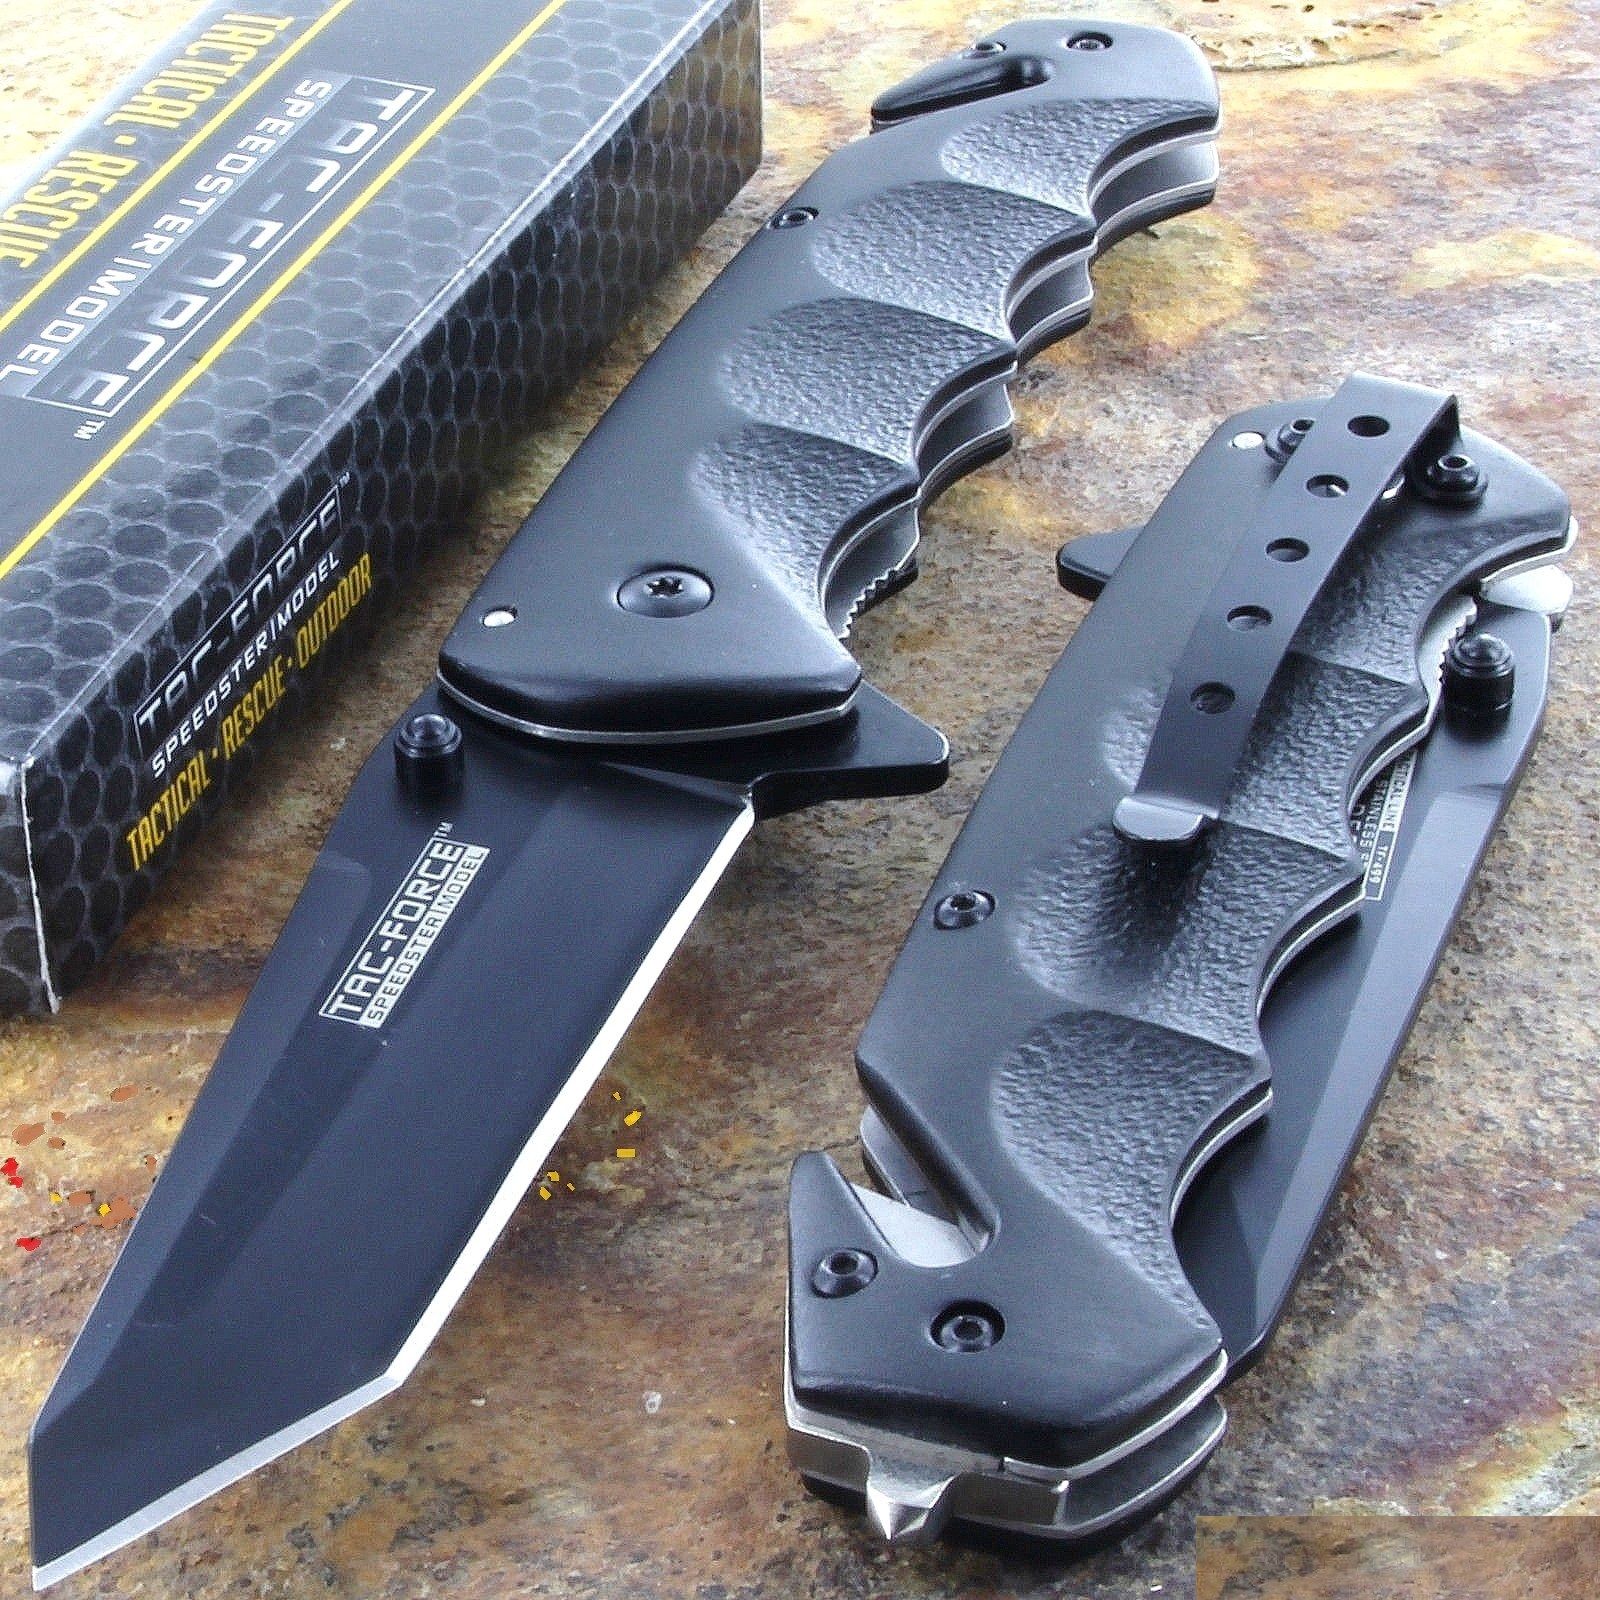 TAC FORCE Black TANTO BLADE Spring Assisted Tactical Folding Pocket Knife New!!!